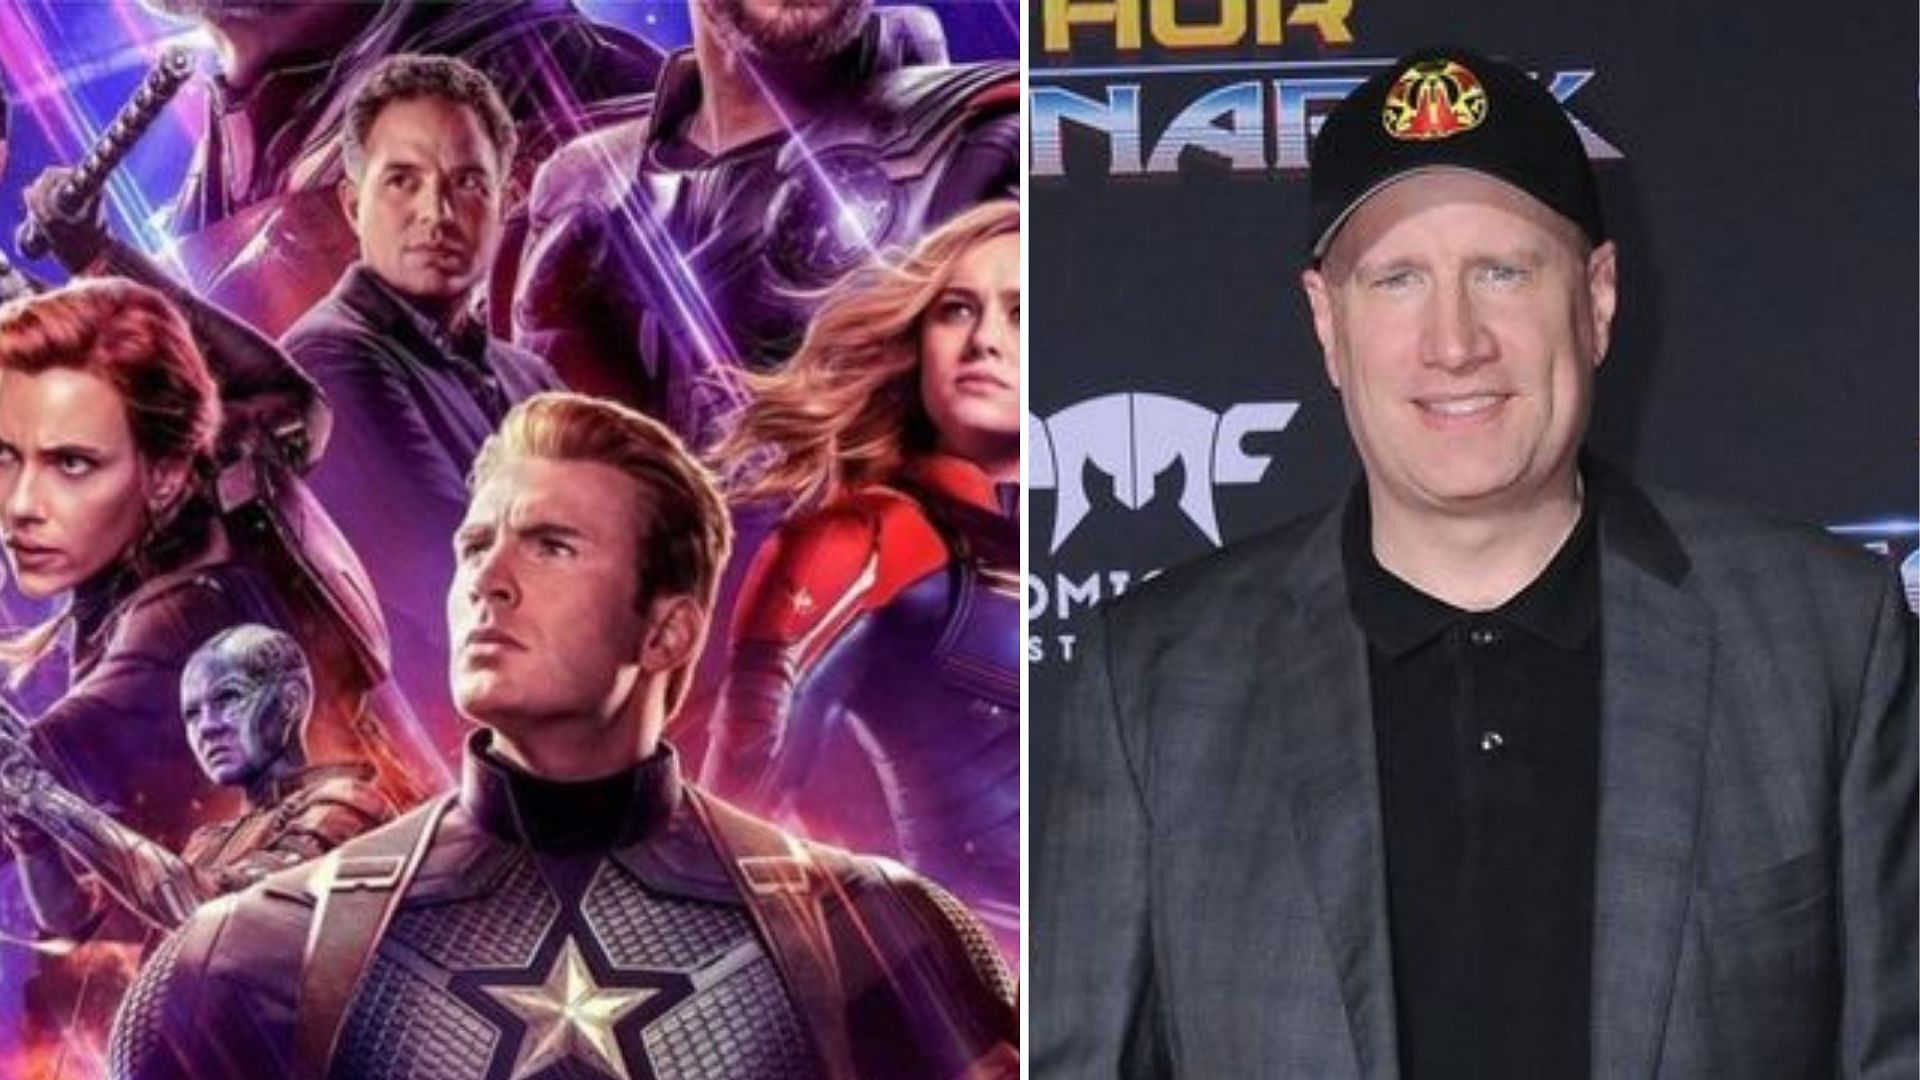 A poster of <i>Avengers Endgame</i>; Marvel boss Kevin Feige.